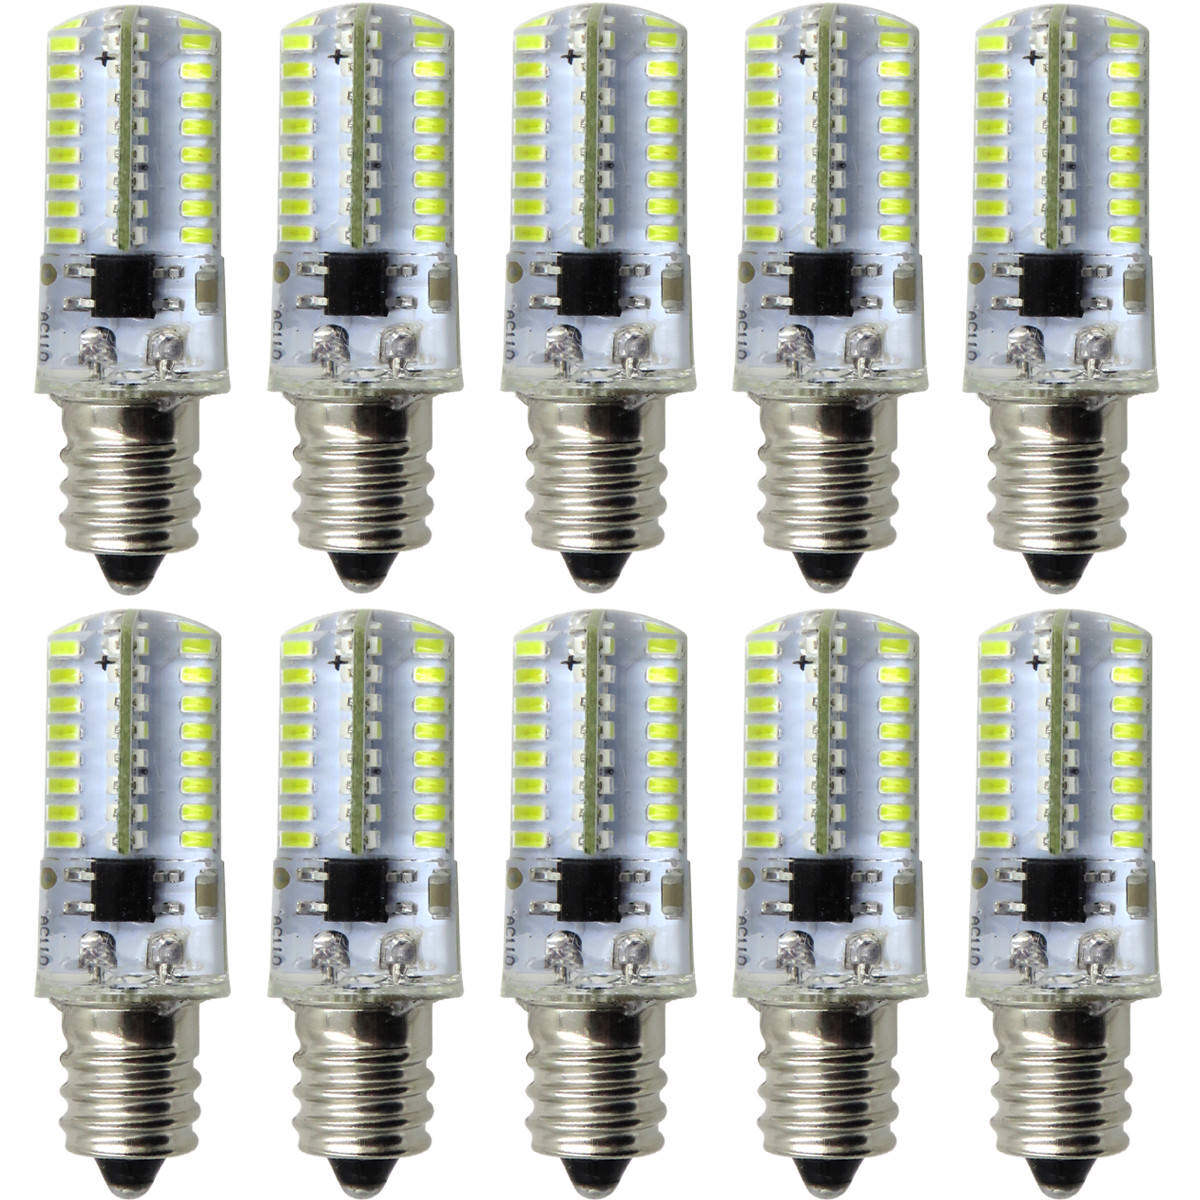 10pcs E12 Candelabra C7 64-3014 SMD LED Light Lamp Bulb Fit PQ1500S White 110V  Unbranded Does not apply